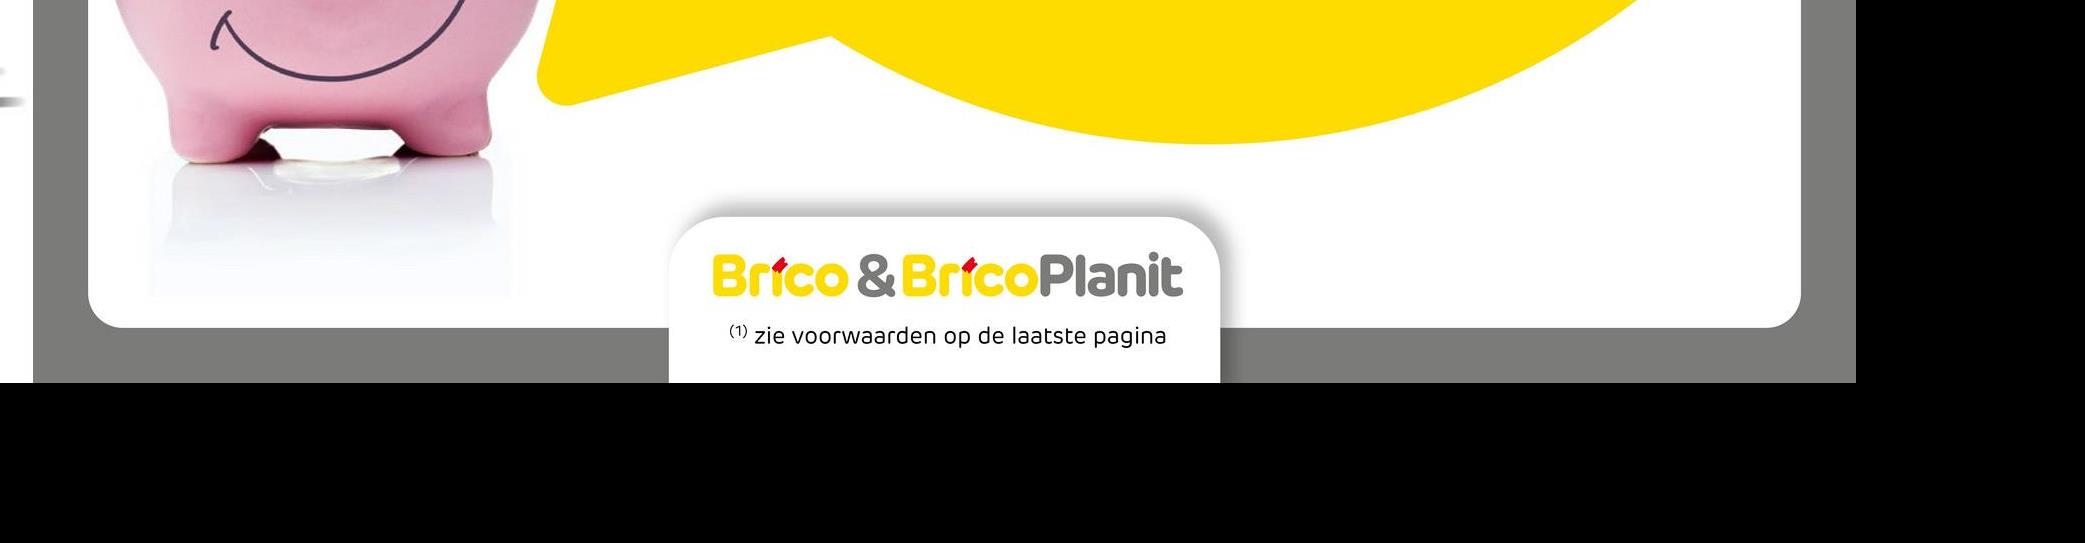 Brico & BricoPlanit
(1) zie voorwaarden op de laatste pagina